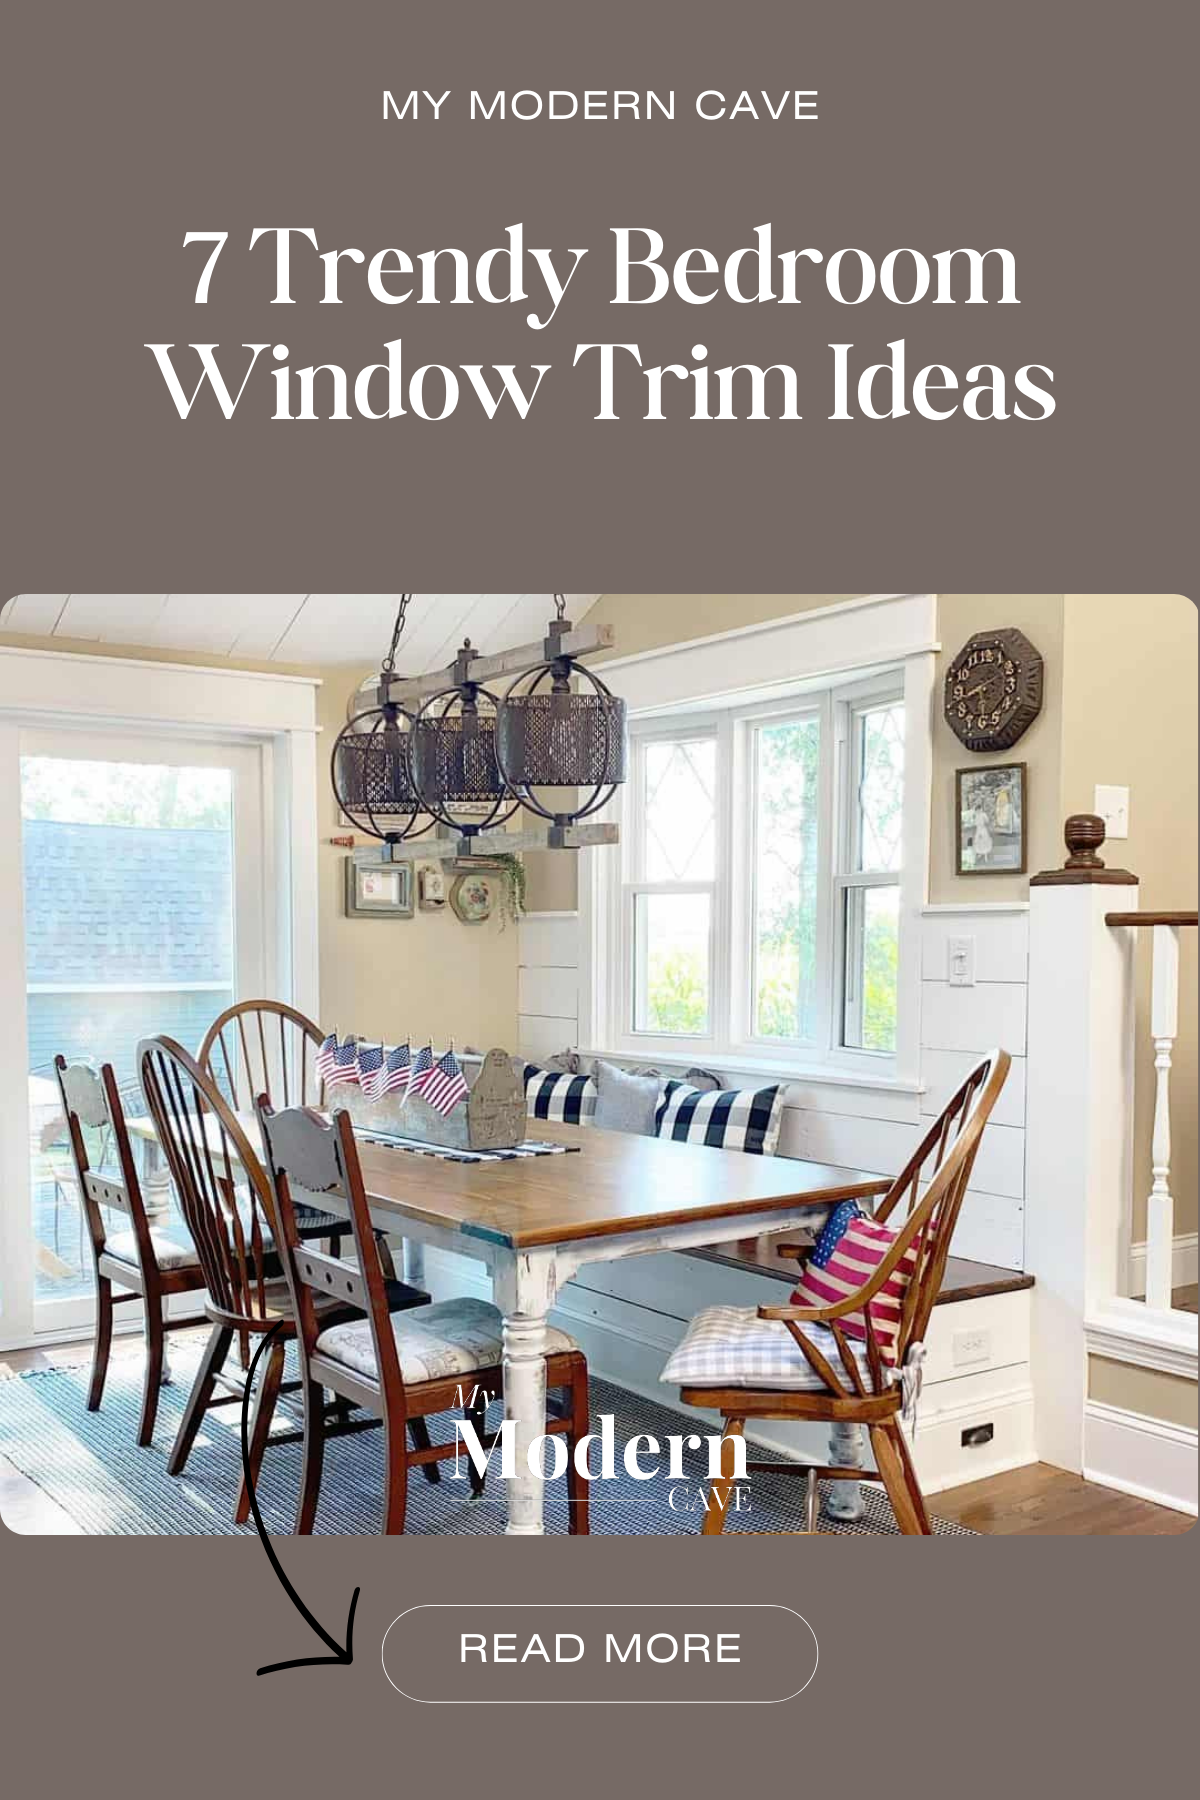 Bedroom Window Trim Ideas Infographic